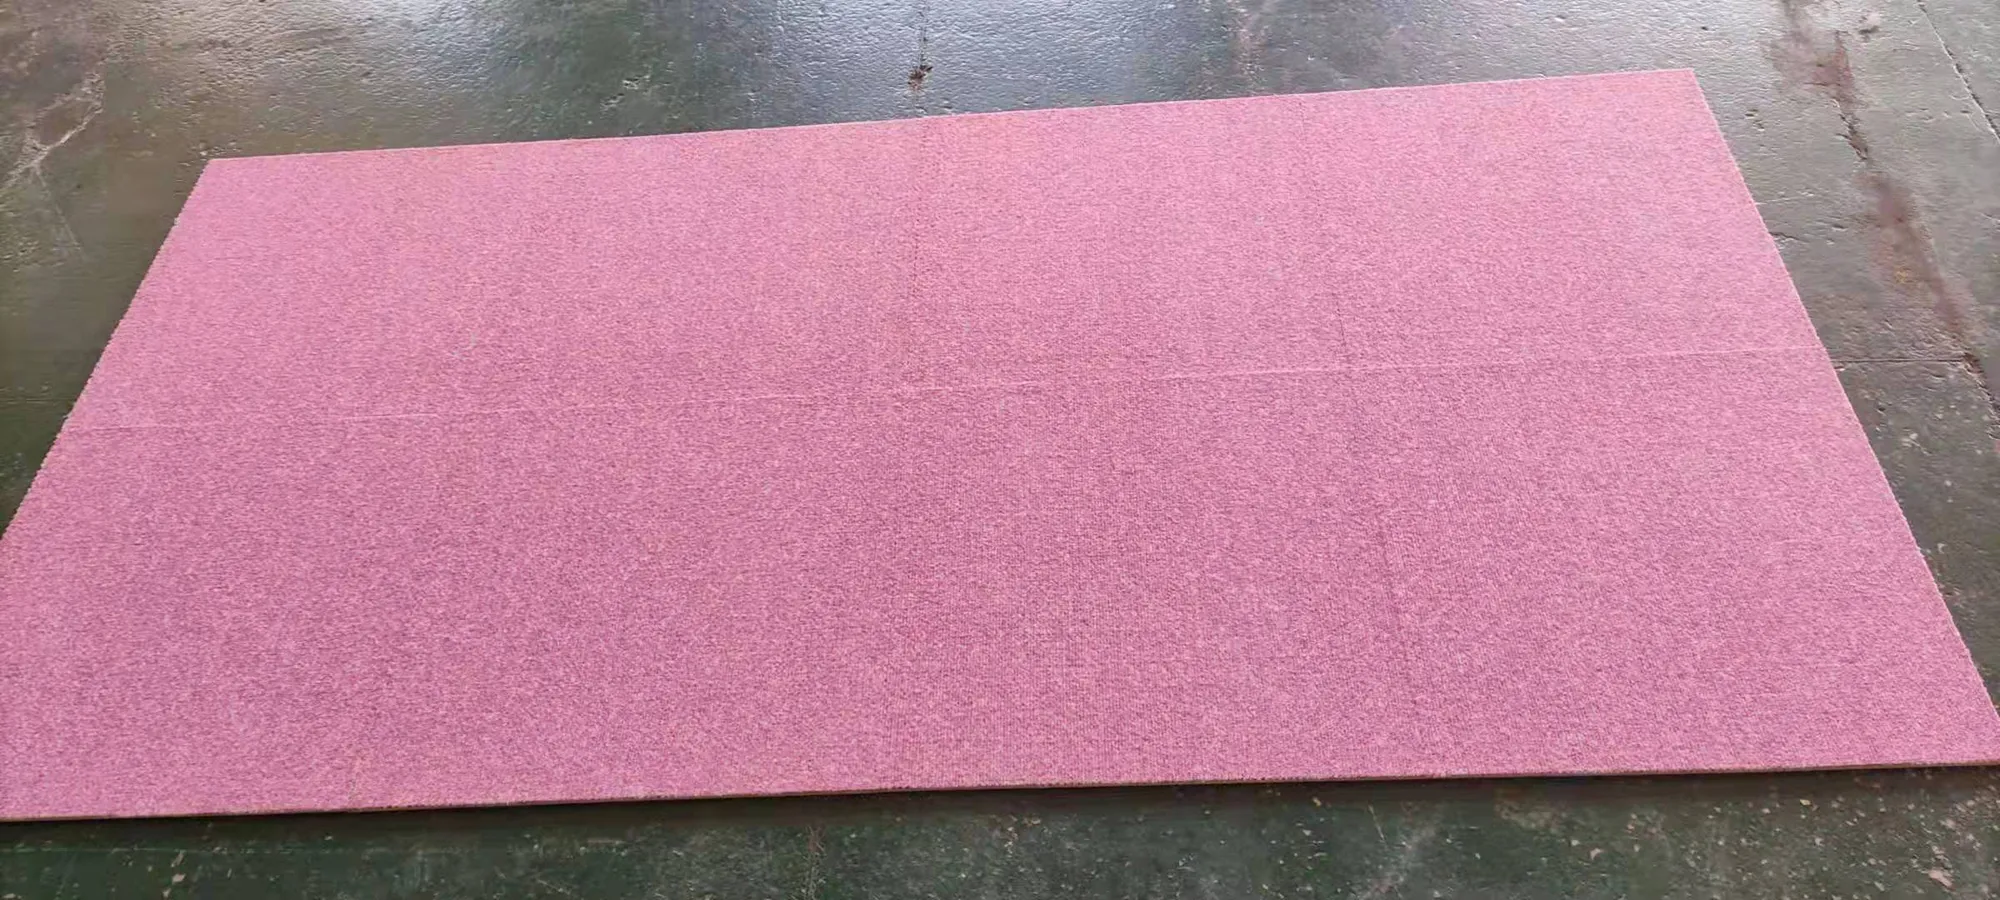 pink carpet tiles